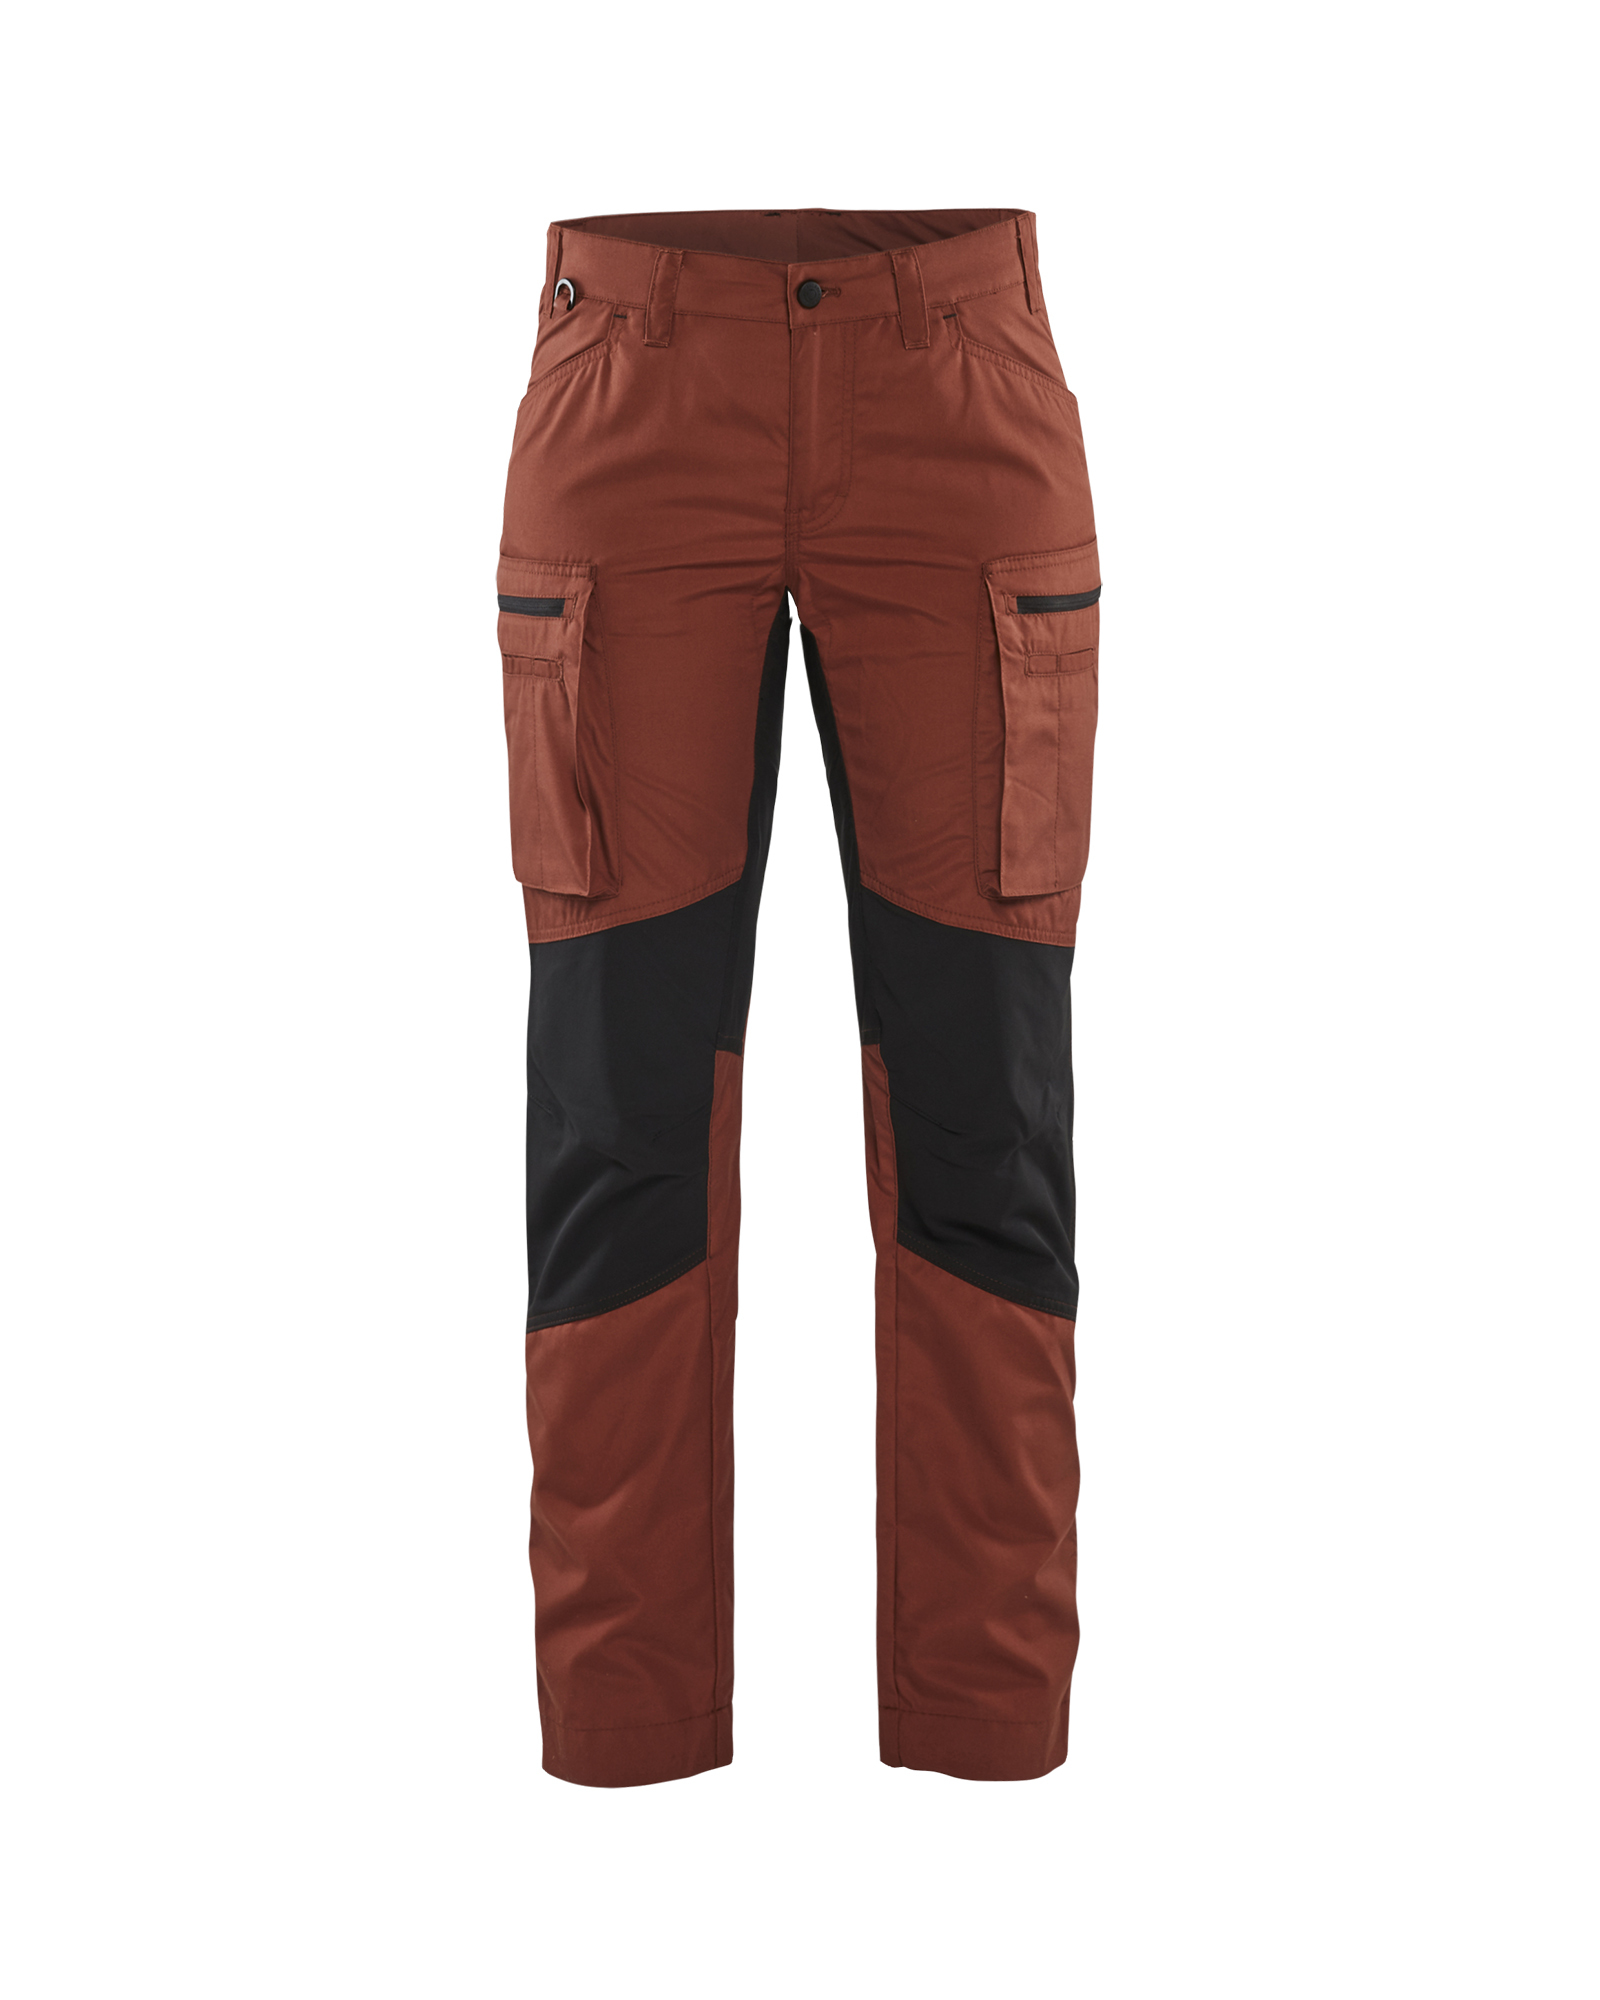 Pantalon maintenance +stretch femme Blåkläder 7159 Rouge brique/Noir Blaklader - 715918455999C